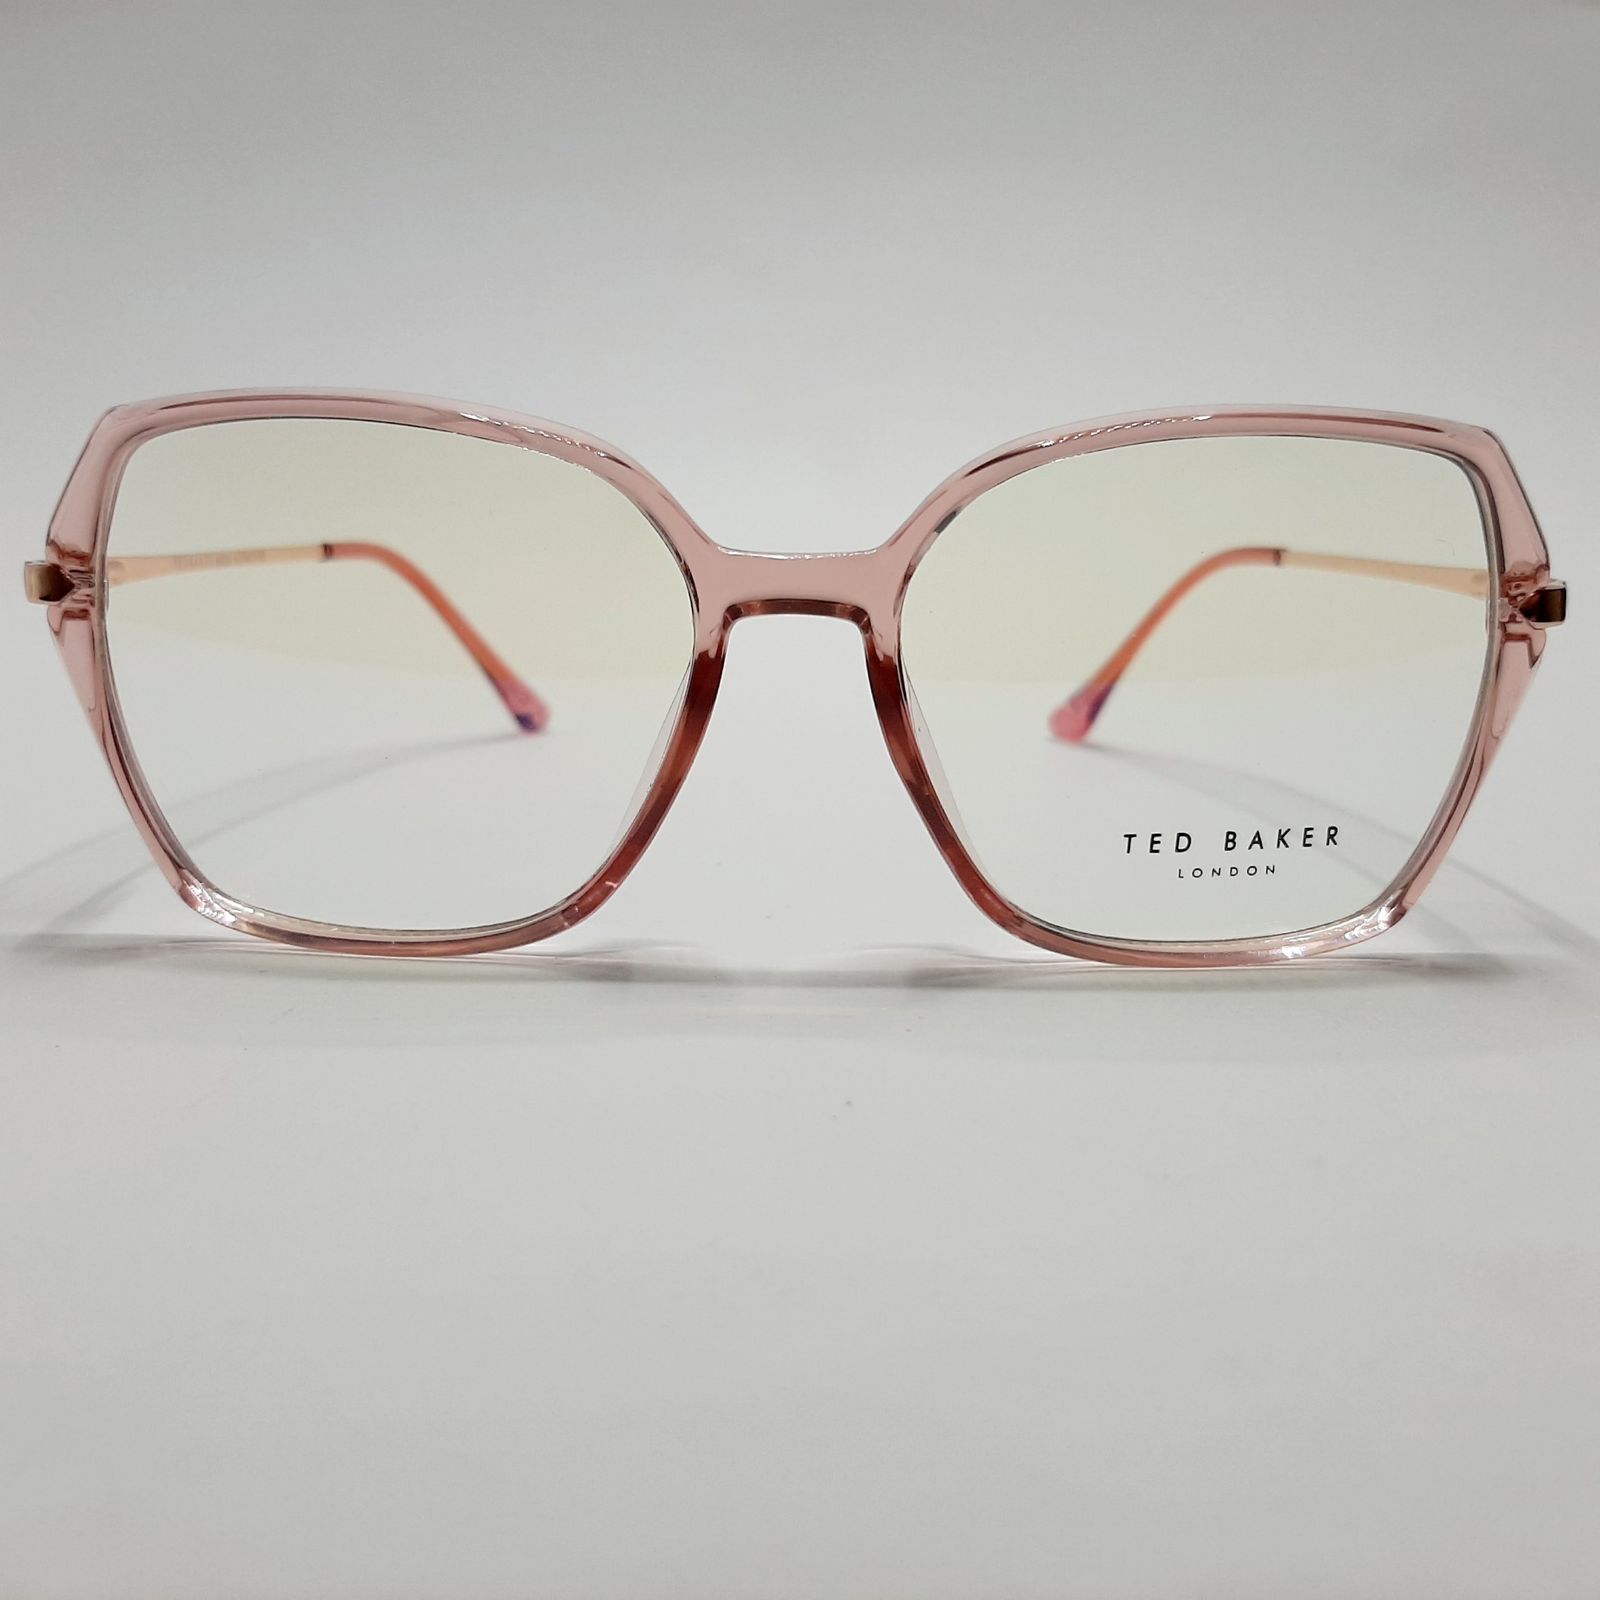 فریم عینک طبی زنانه تد بیکر مدل 95642c6 -  - 2